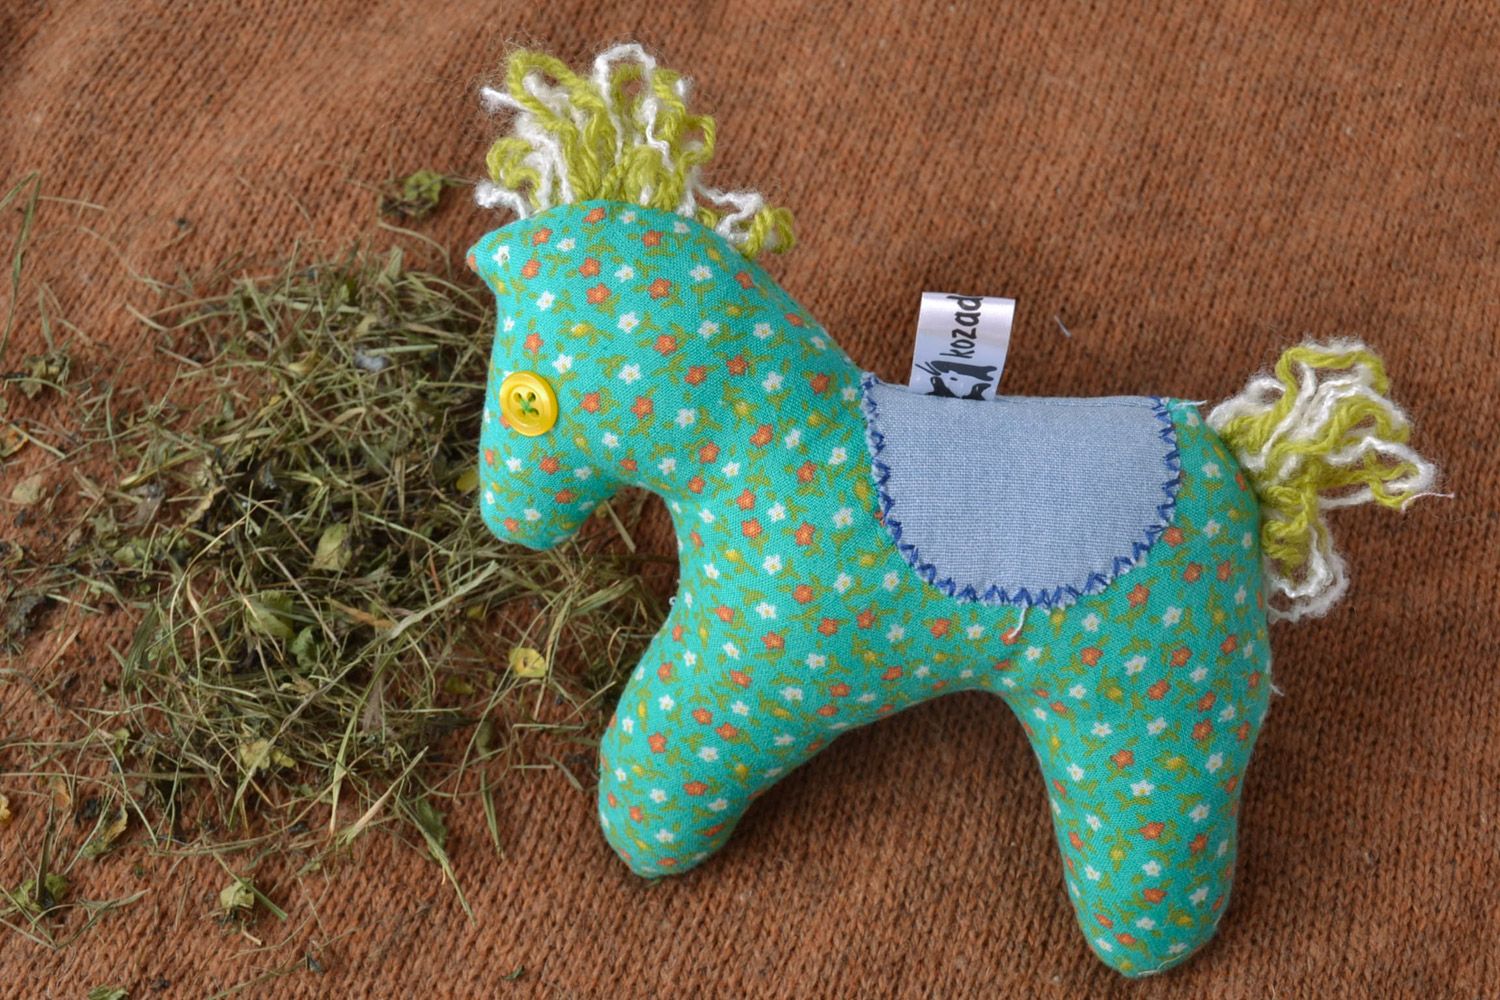 Textil Kuscheltier Pferd mit Polyester Füllung für Kinder sicher einfach klein foto 1